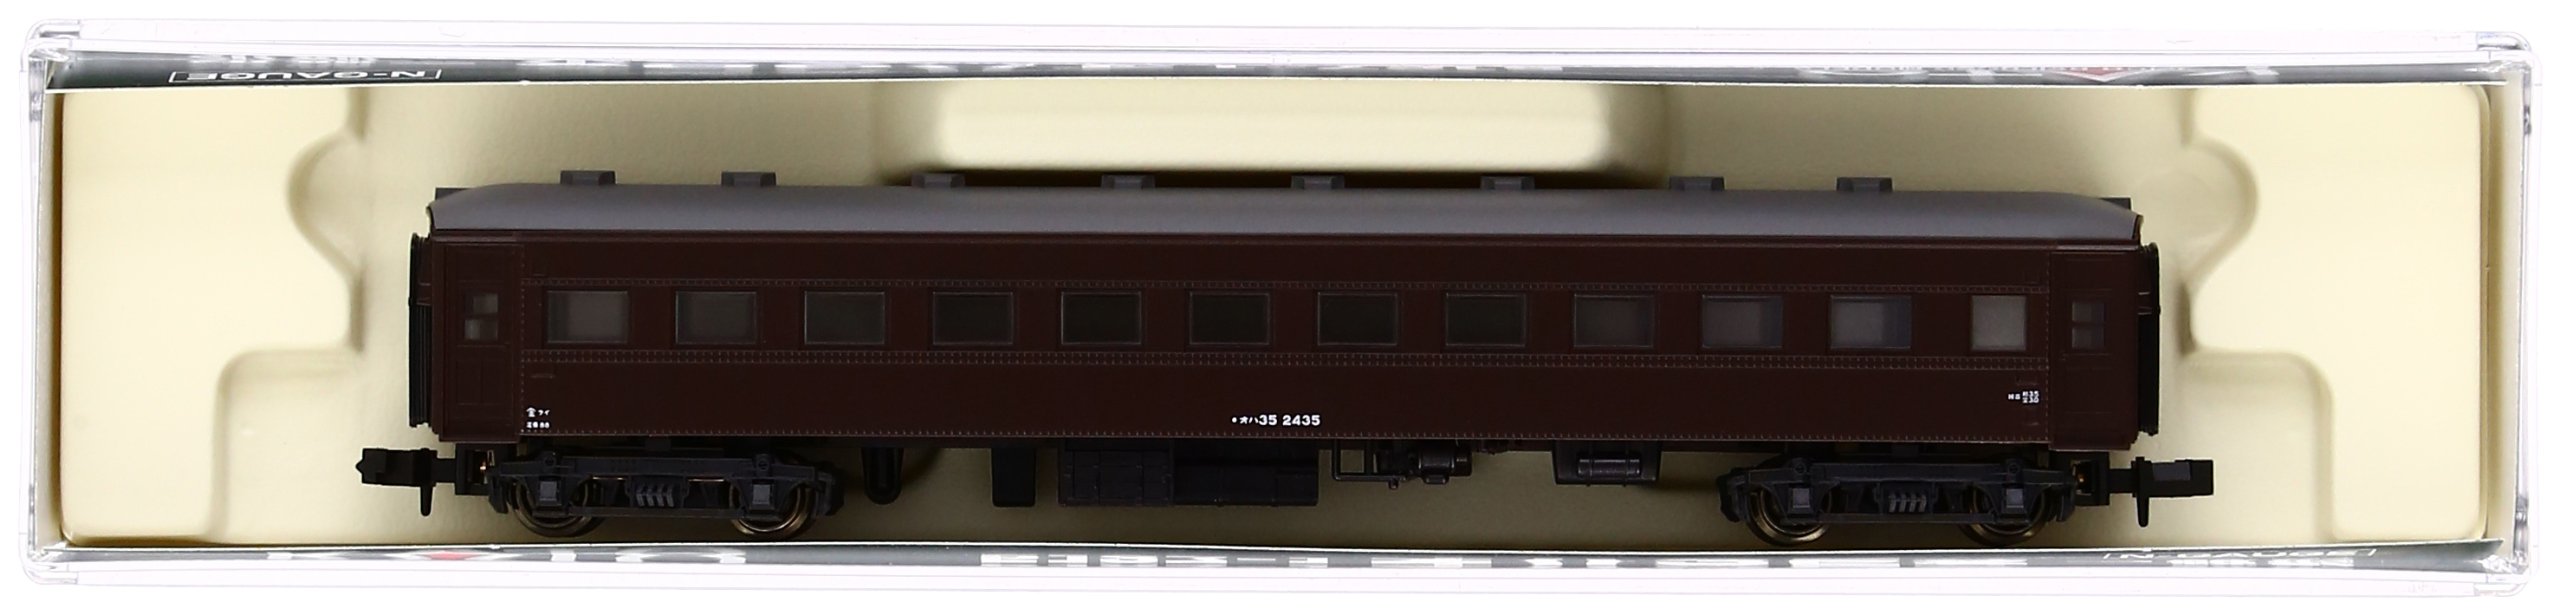 Kato N Gauge 5127-1 Voiture de voyageurs modèle ferroviaire marron - Type général Oha35